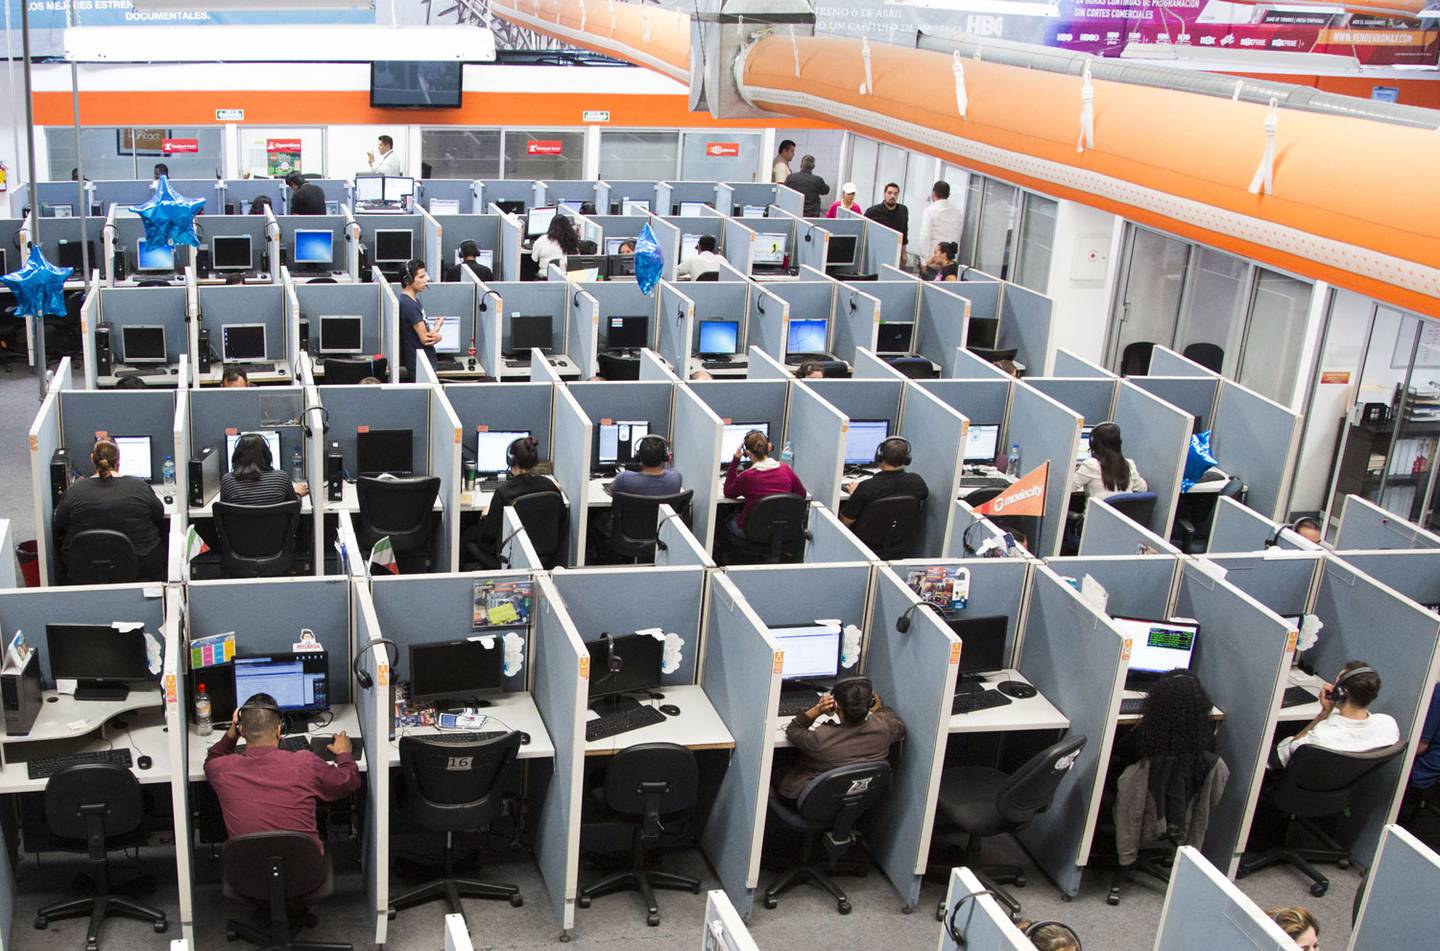 Quienes laobran en call centers se verían mermados por la reducción de la jornada laboral, debido a que trabajan por comisiones y metas de horario.